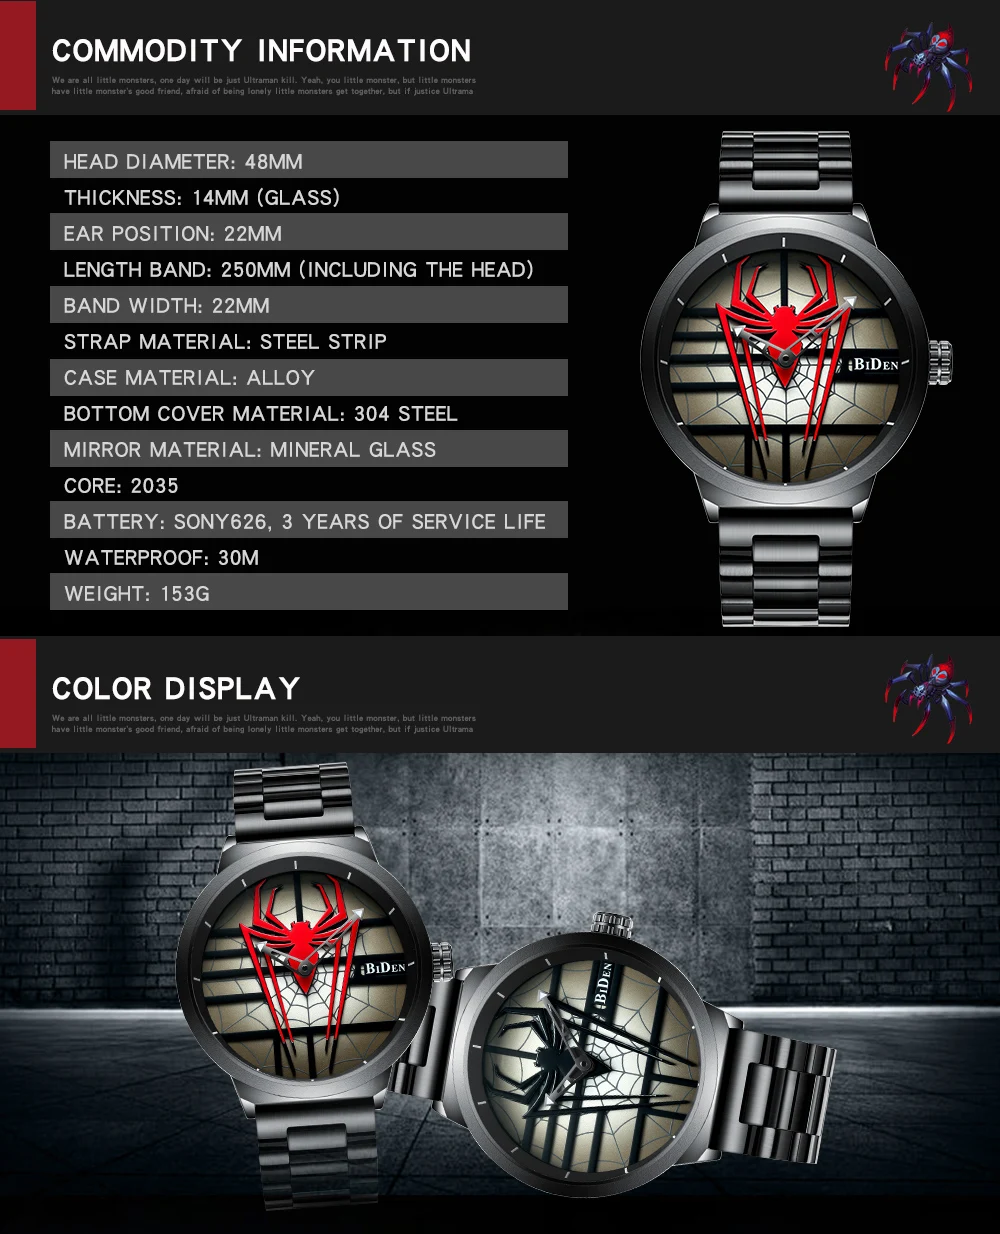 BIDEN мужской роскошный бренд часов полностью стальные водонепроницаемые кварцевые наручные часы модные спортивные часы мужские персональные часы с человеком-пауком